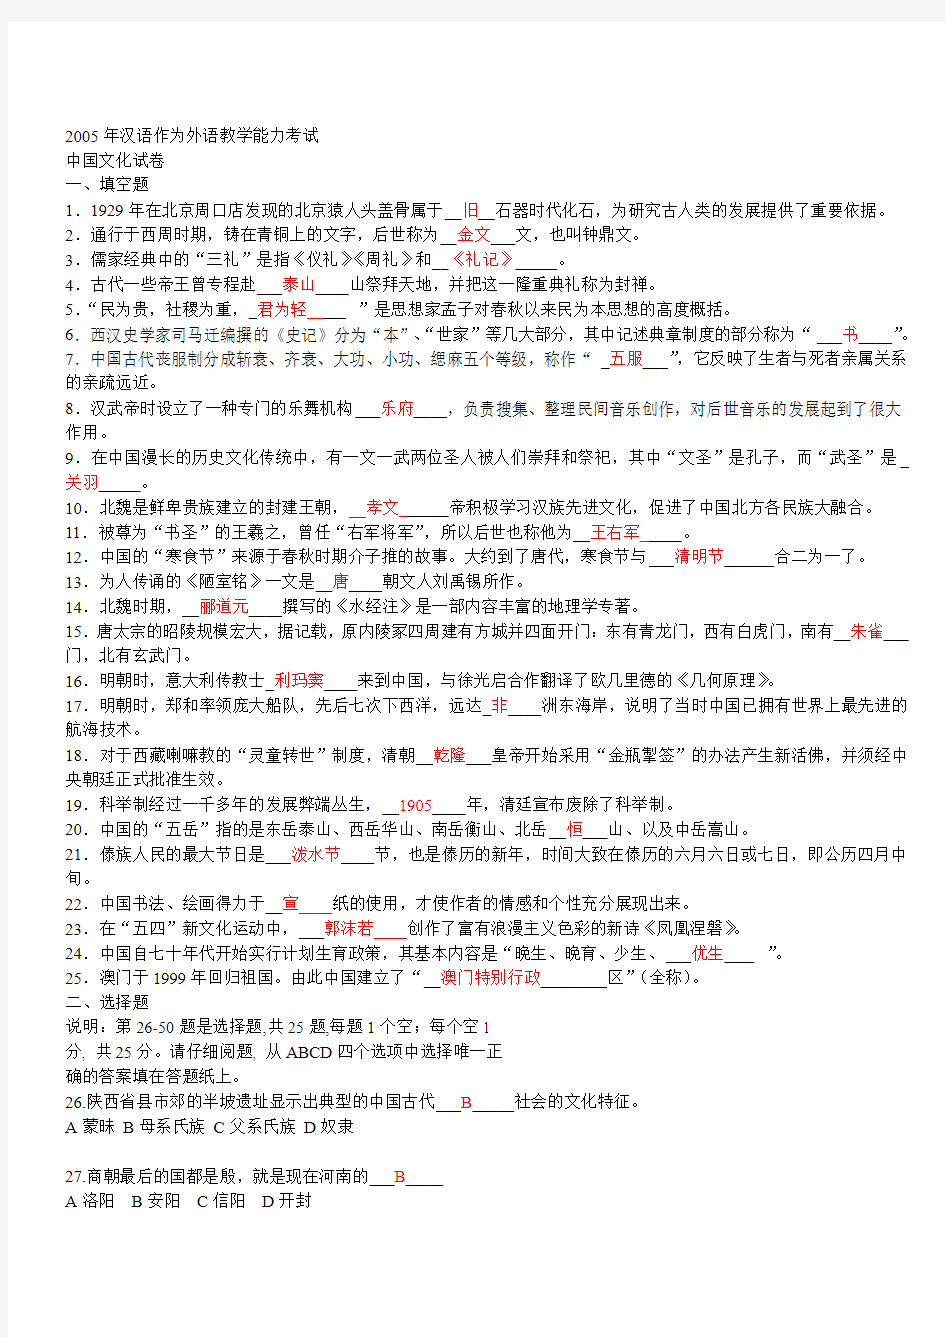 中国文化部分—96-05对外汉语基础(修改)